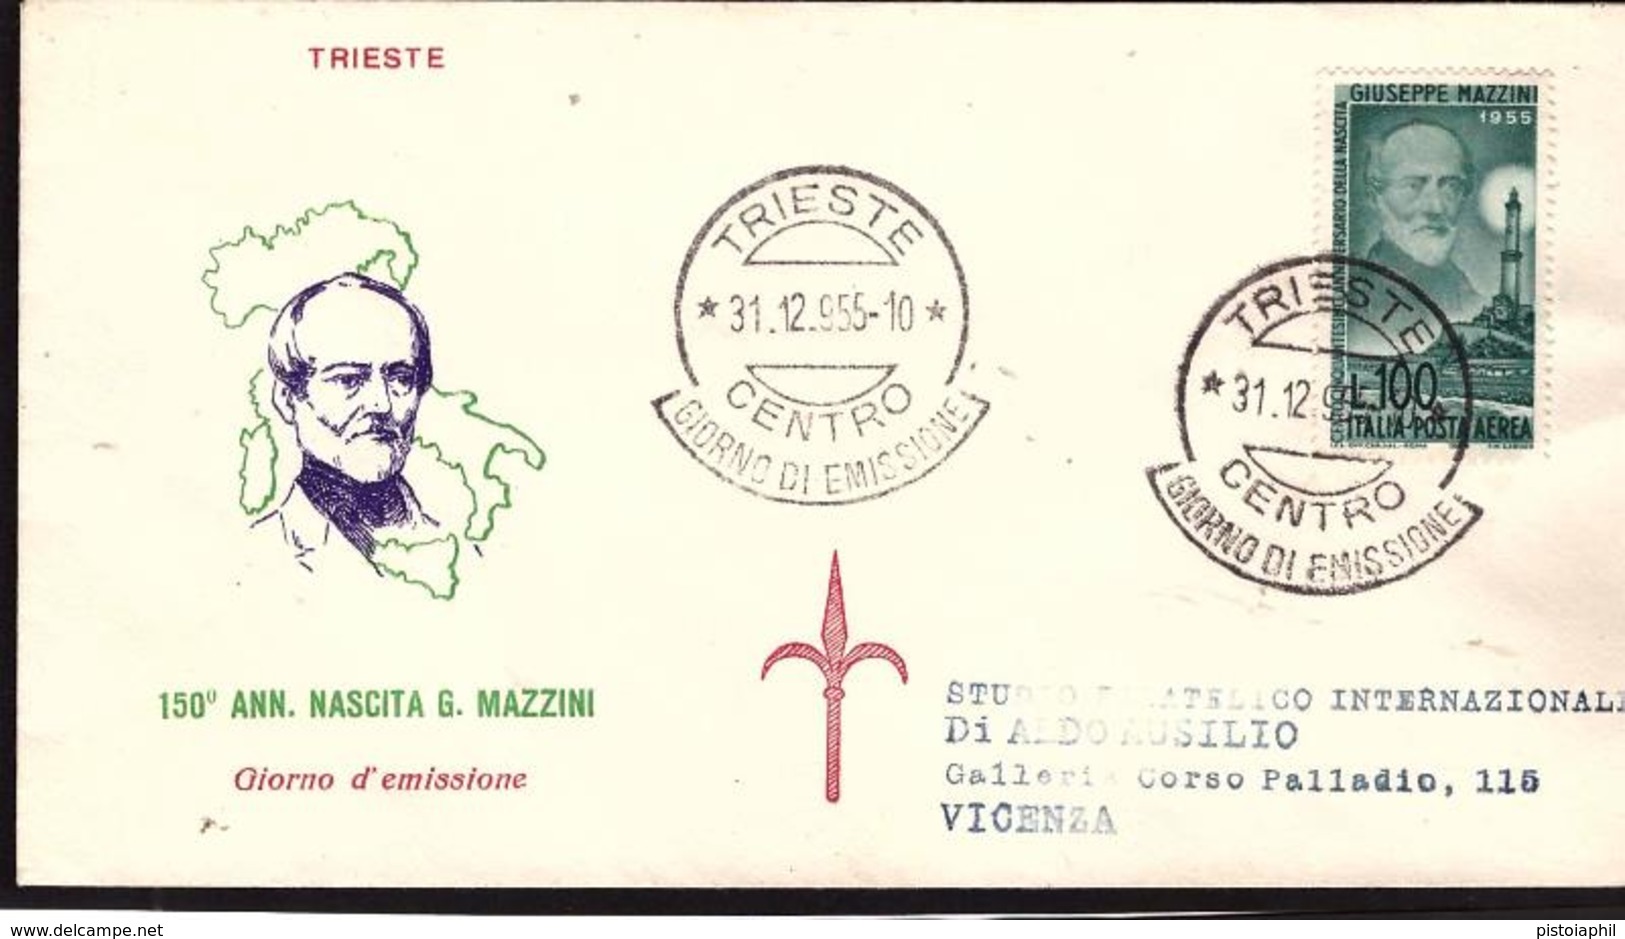 Fdc Tergeste: POSTA AEREA 1000 Lire Mazzini (1955) AF_Trieste - FDC